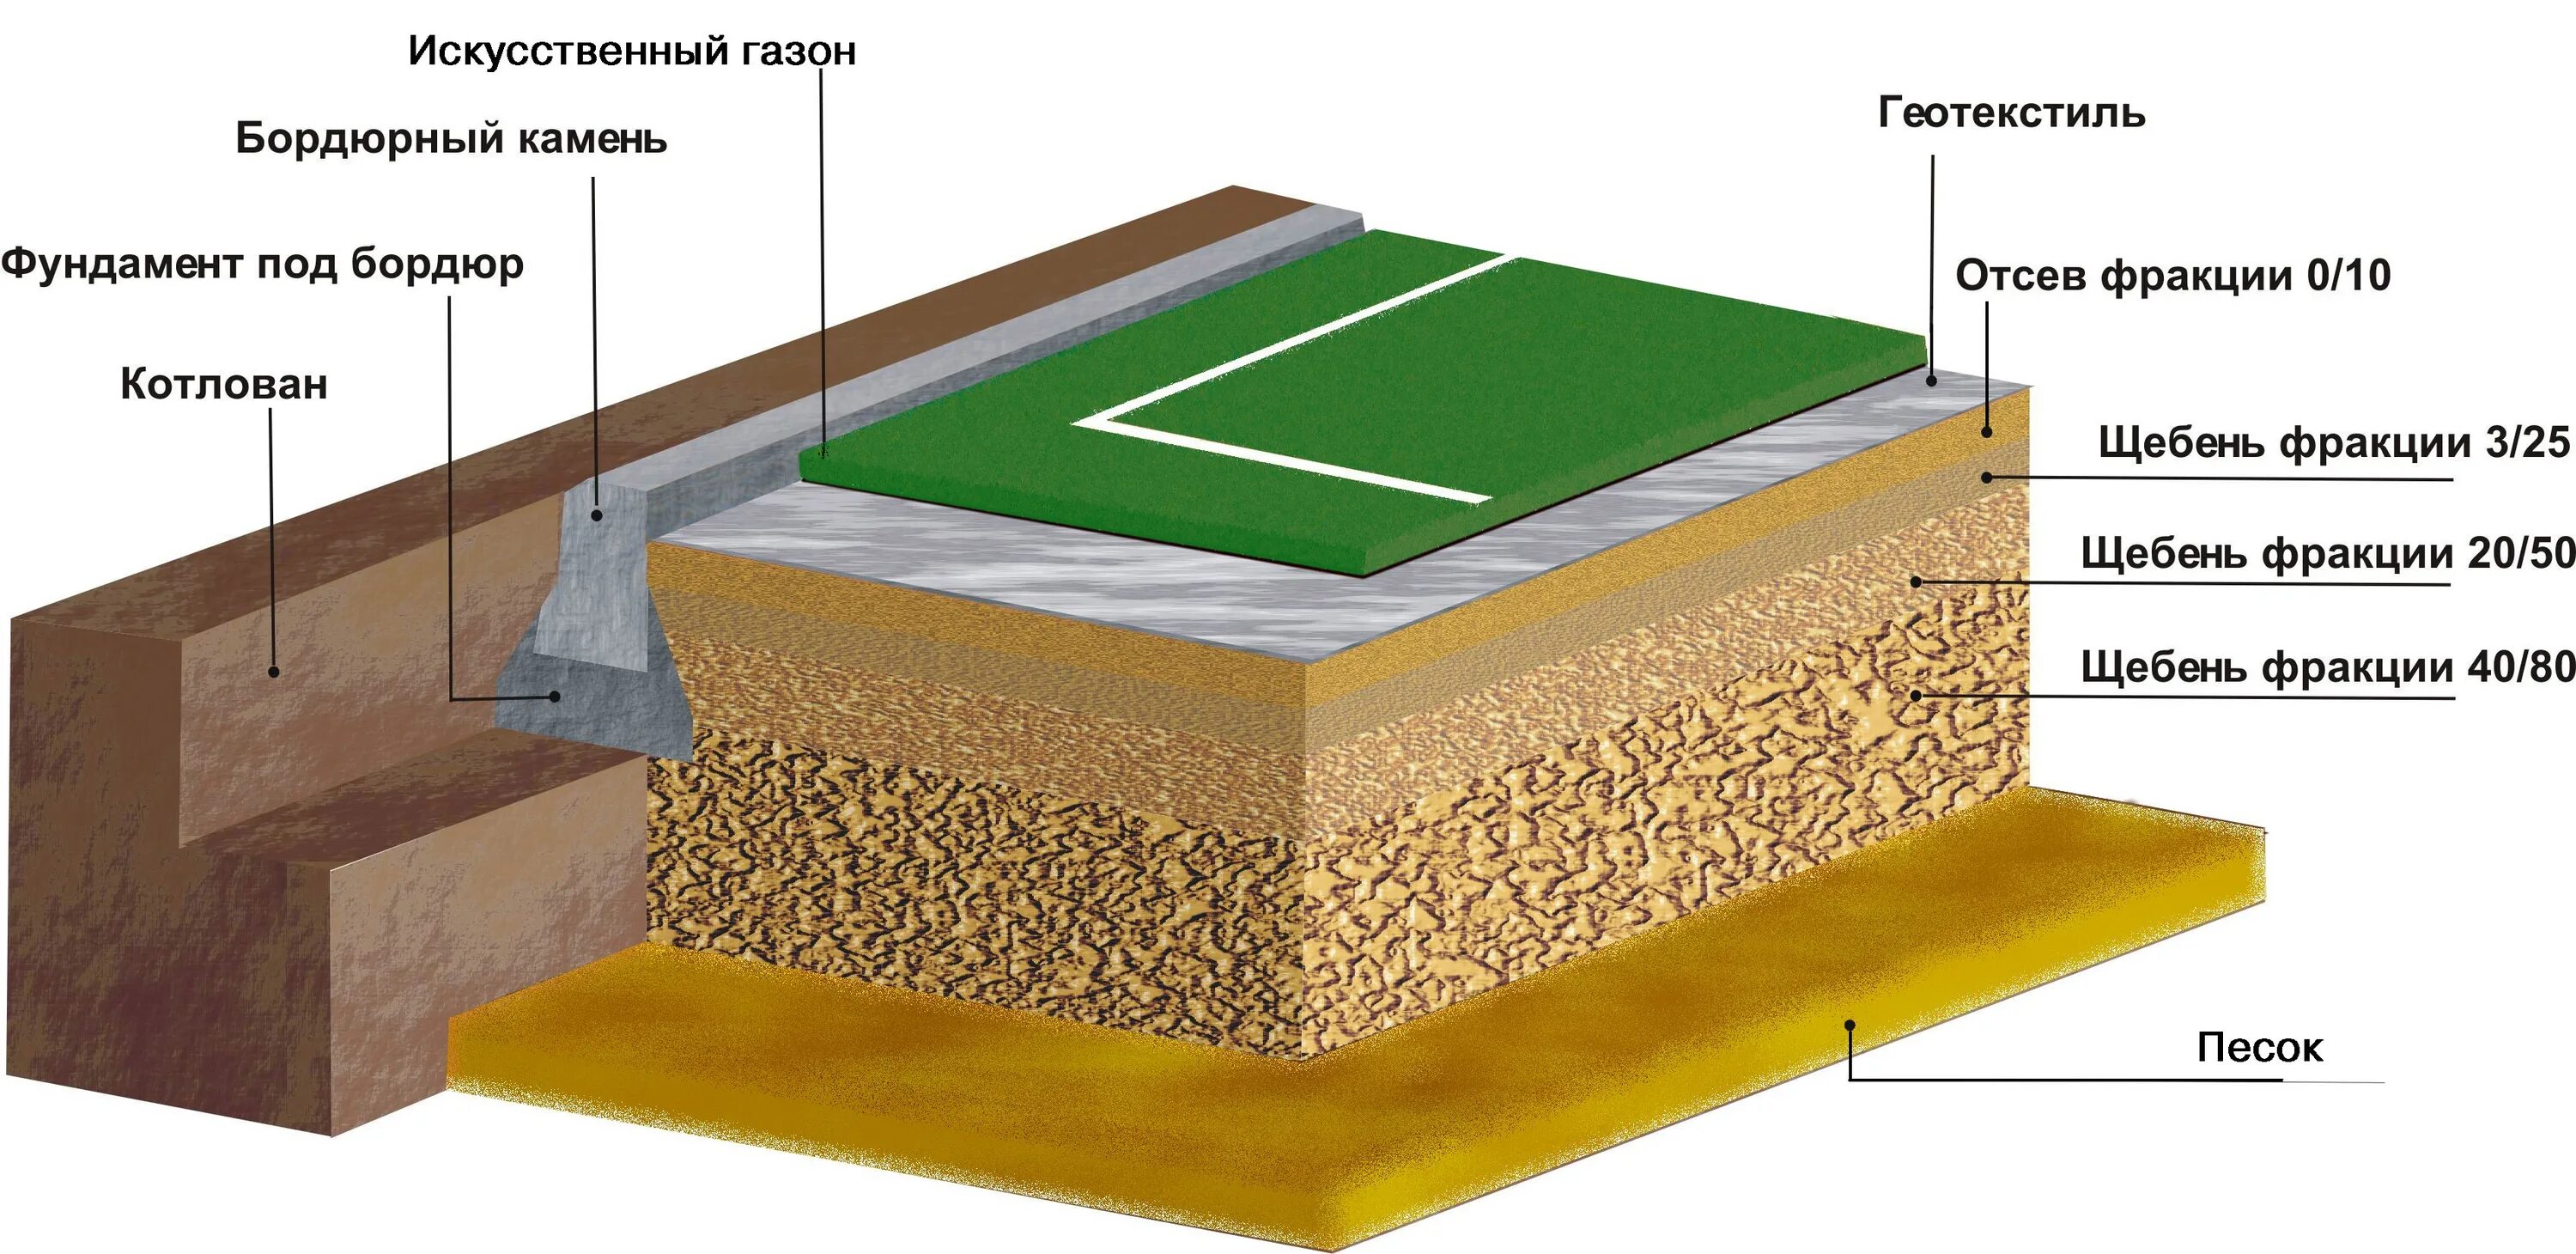 Технология укладки искусственного газона футбольного поля. Конструкция резинового покрытия для спортивной площадки. Основание для спортивной площадки с резиновым покрытием. Основание спортивной площадки. Покрытие и т д